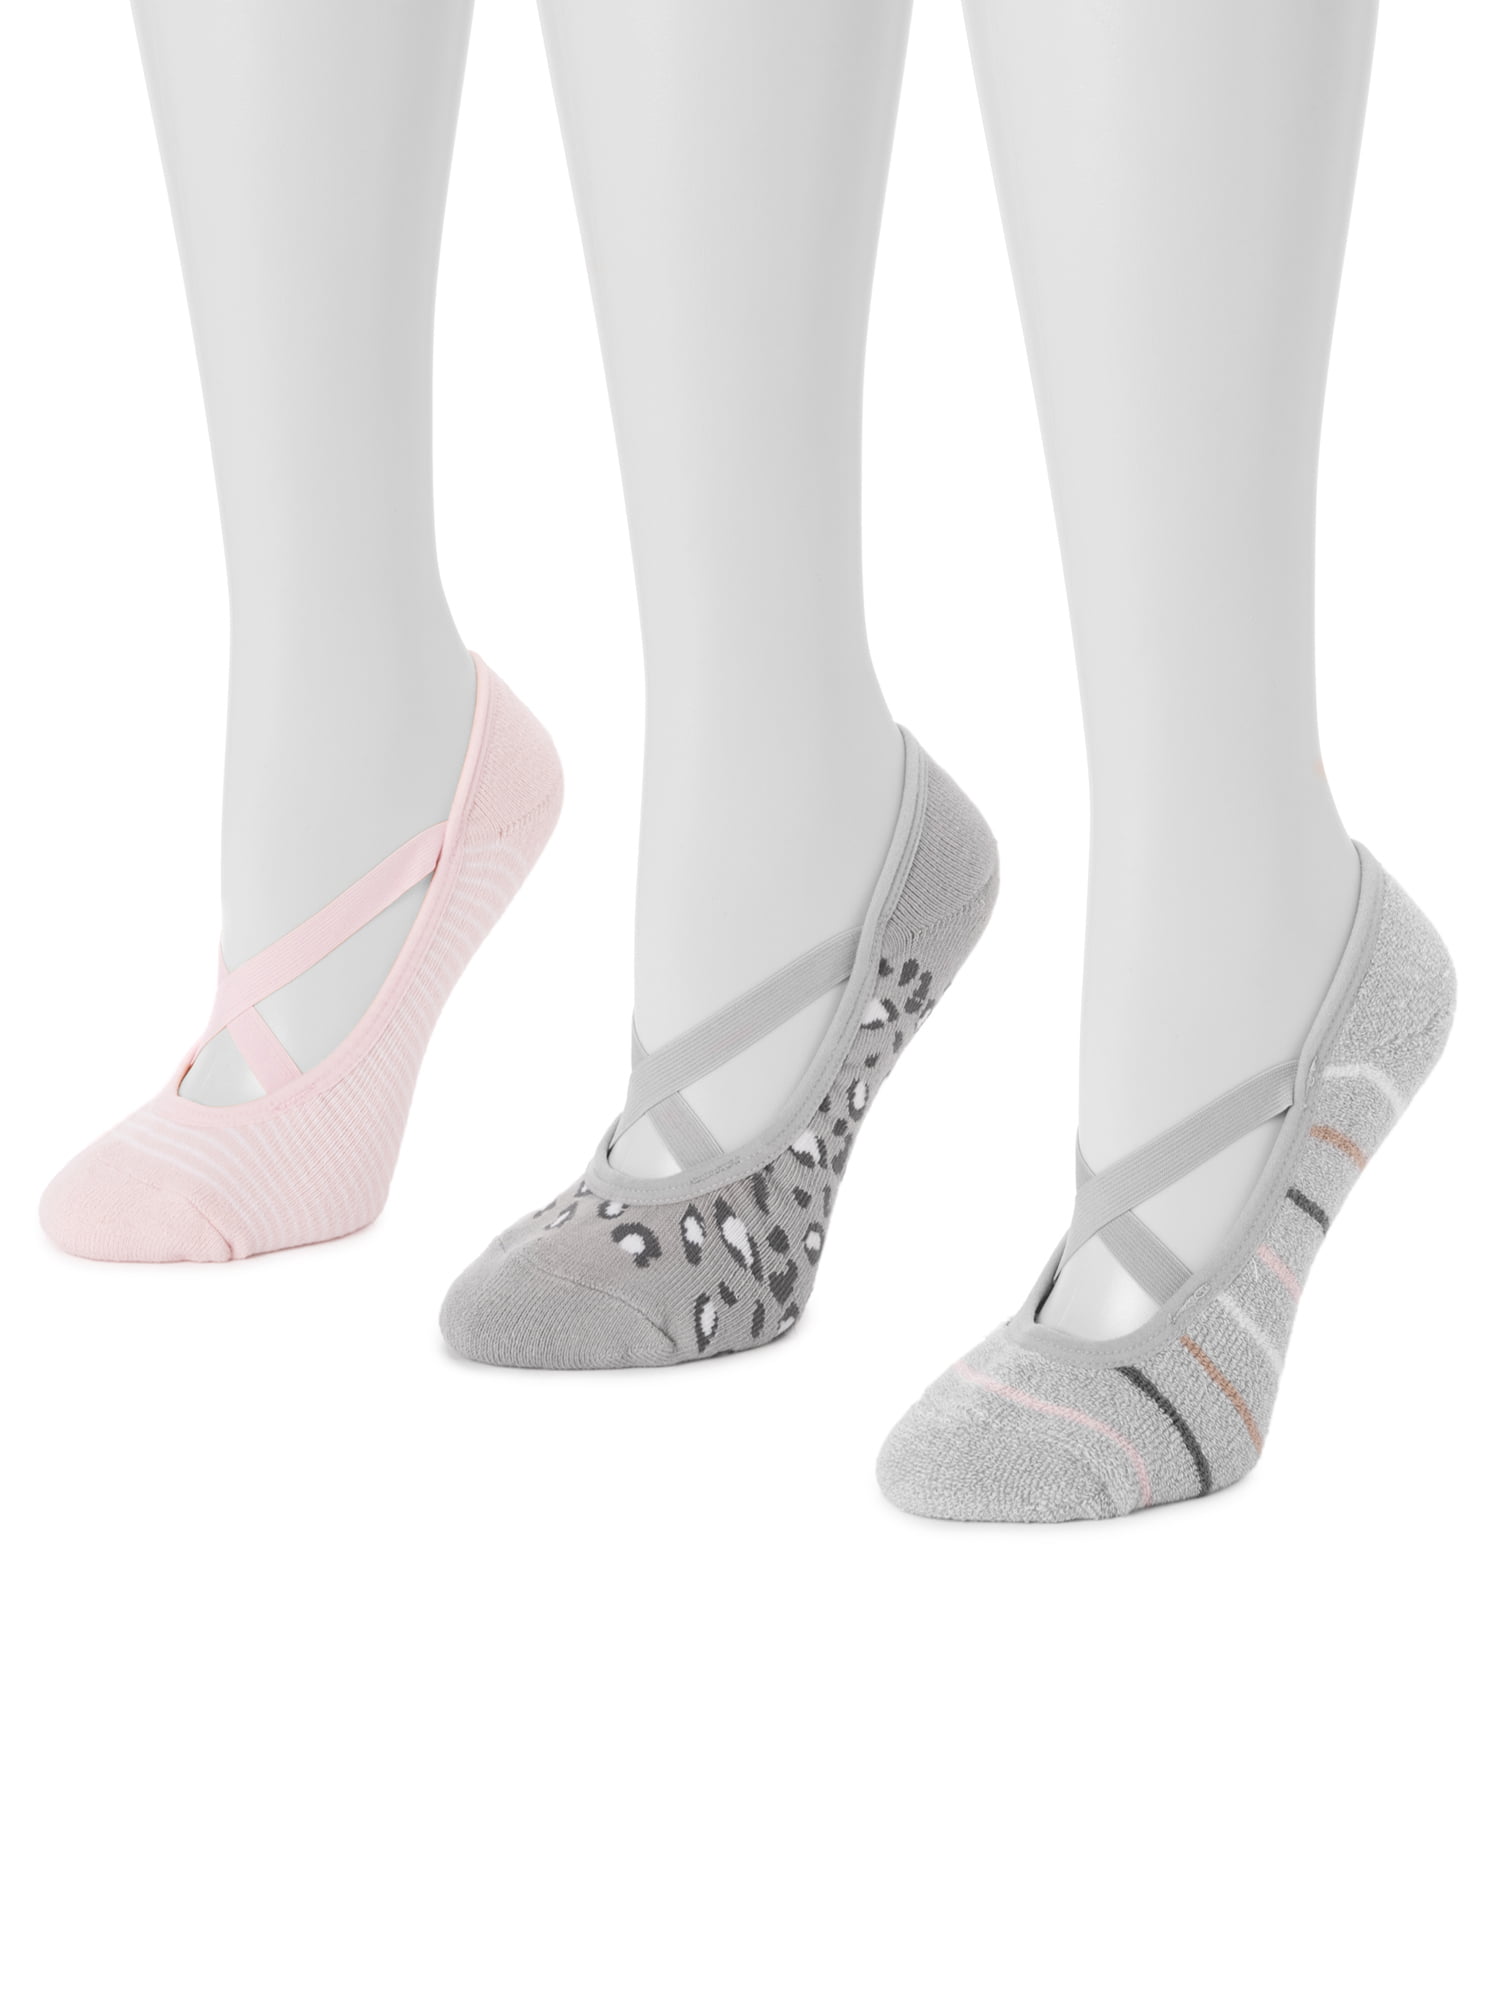 MUK LUKS Women's BALLERINA Socks, 6 pairs 